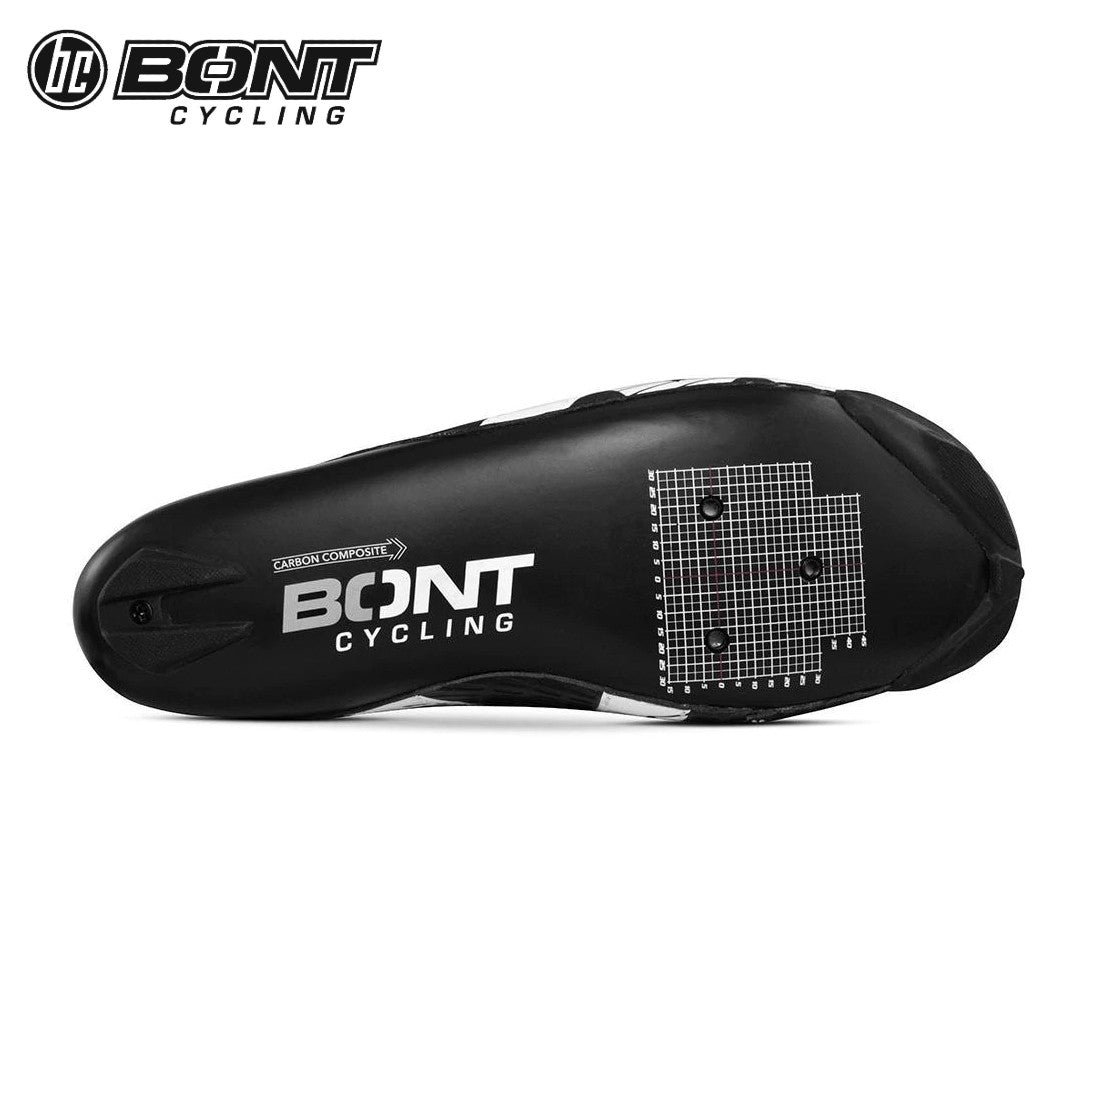 Bont RIOT+ Carbon Composite / BOA Cycling Shoes - Black/White